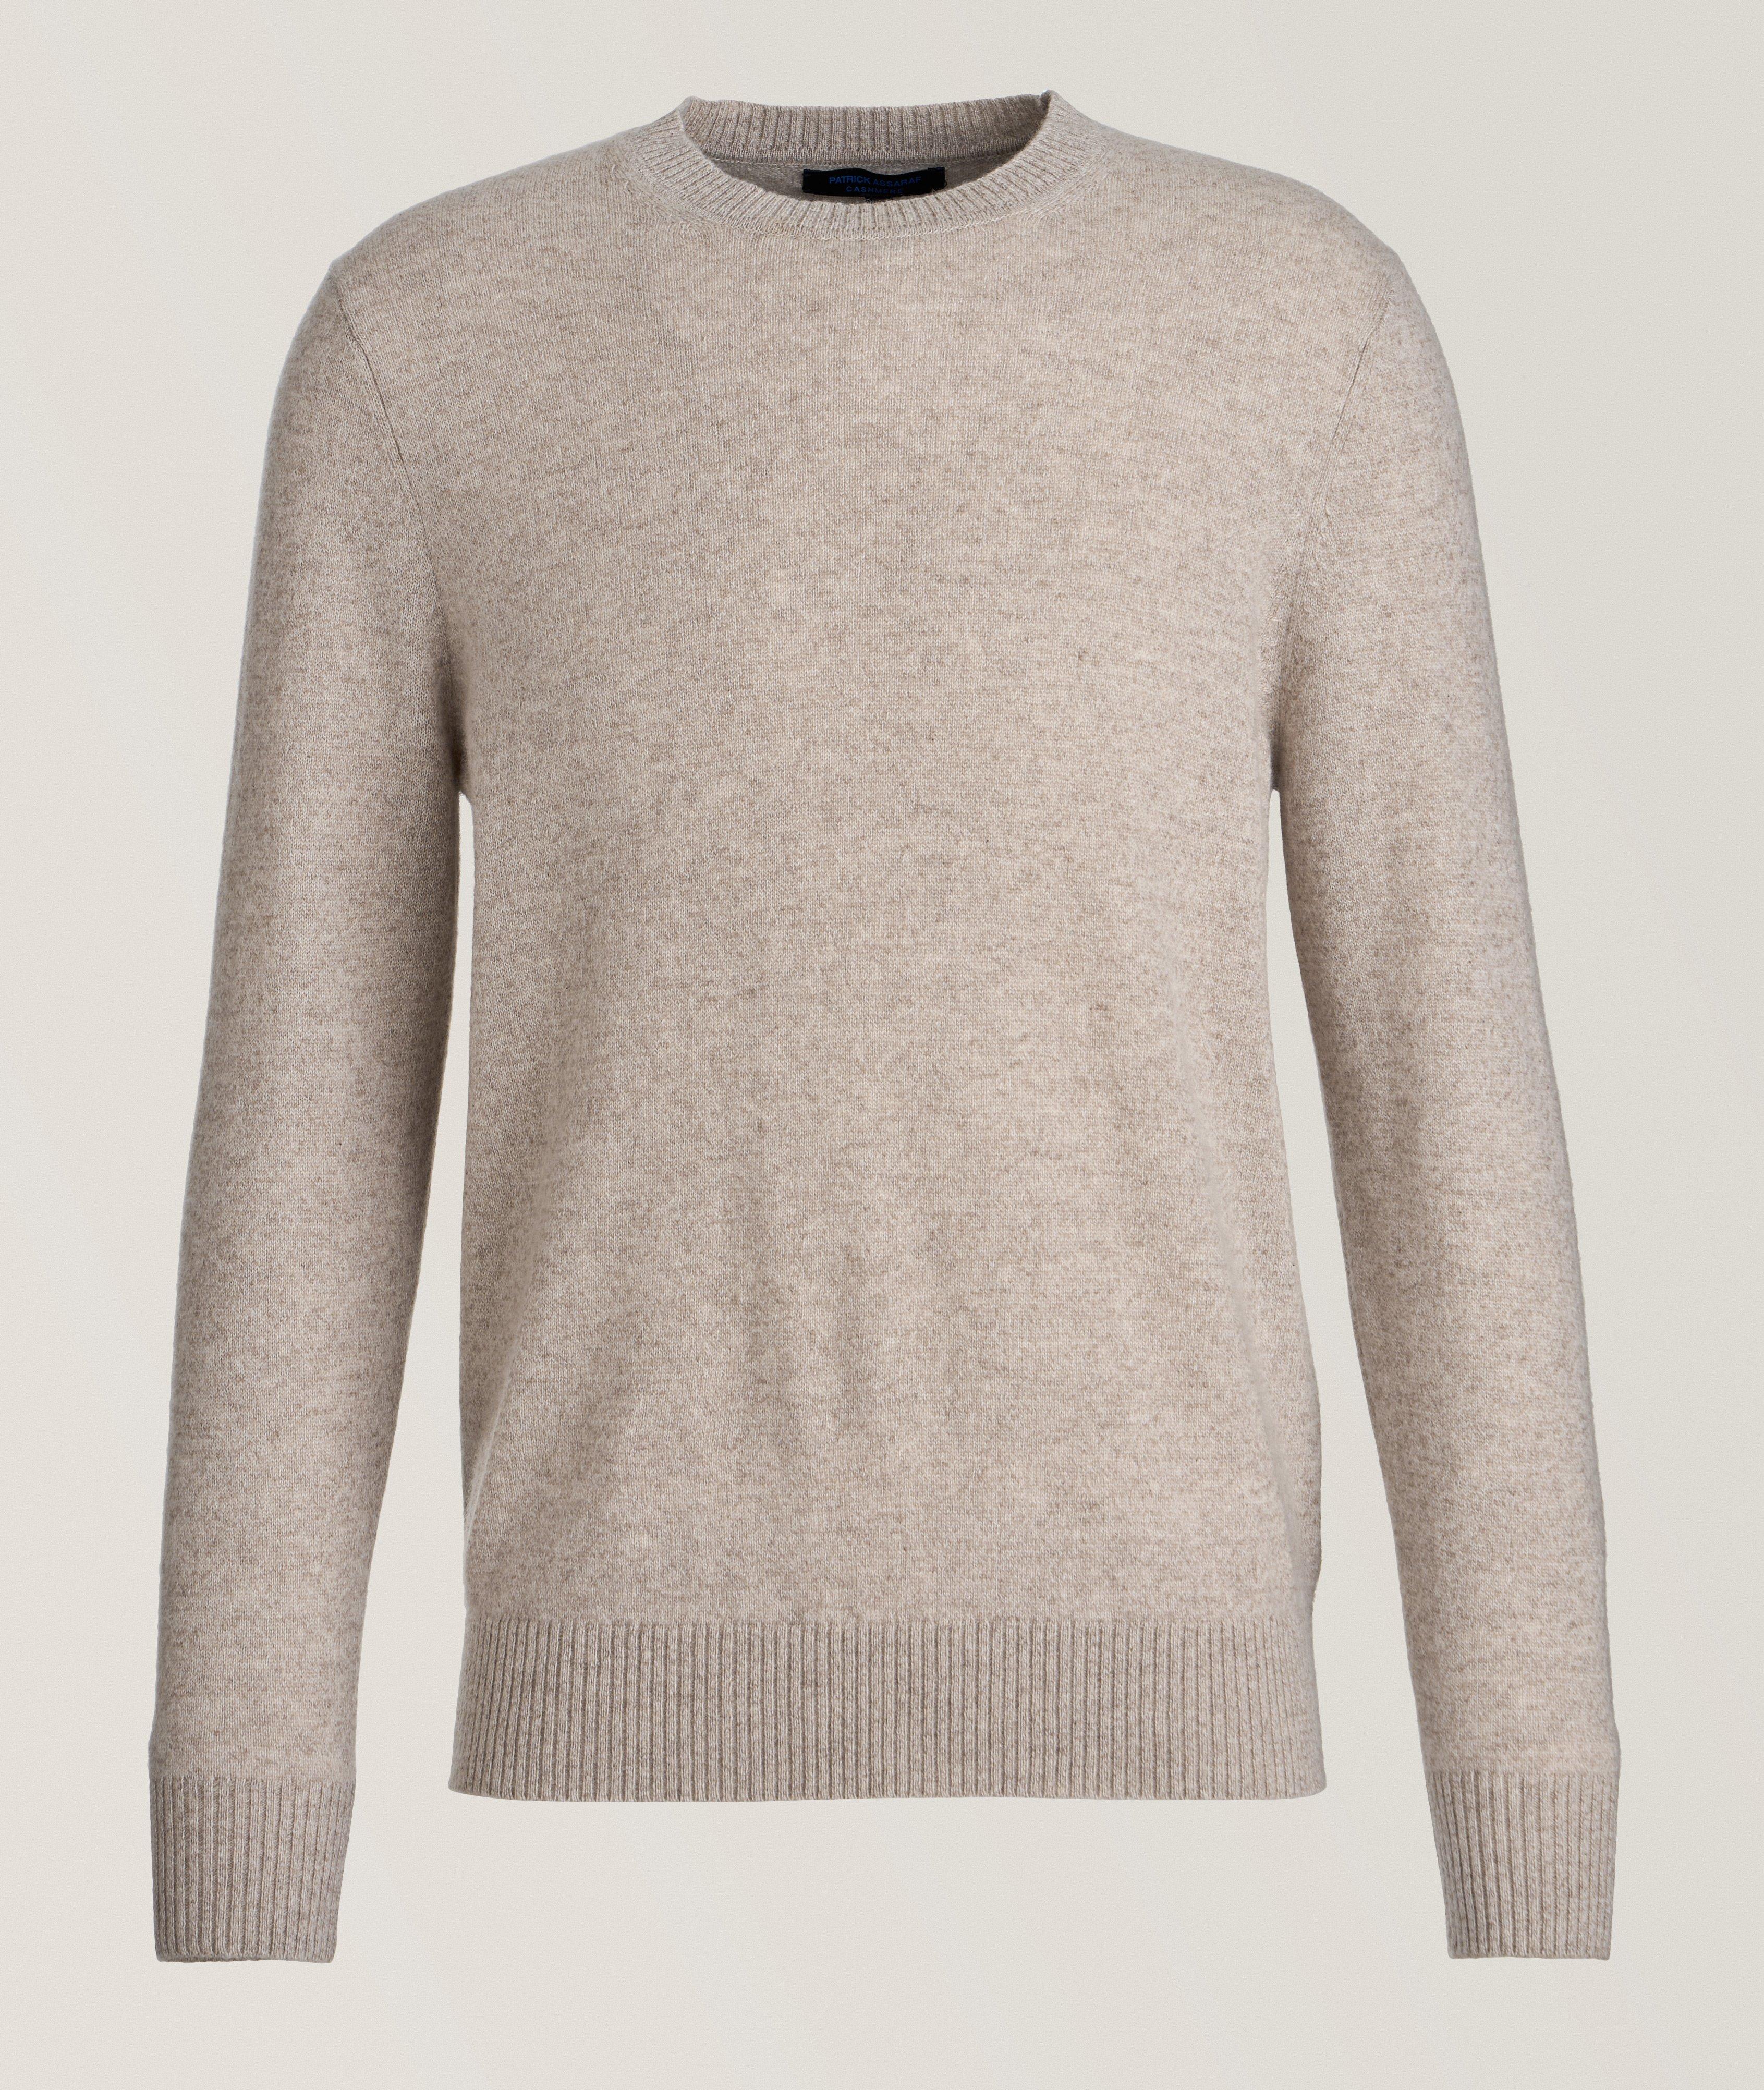 Cashmere Crewneck Sweater image 0